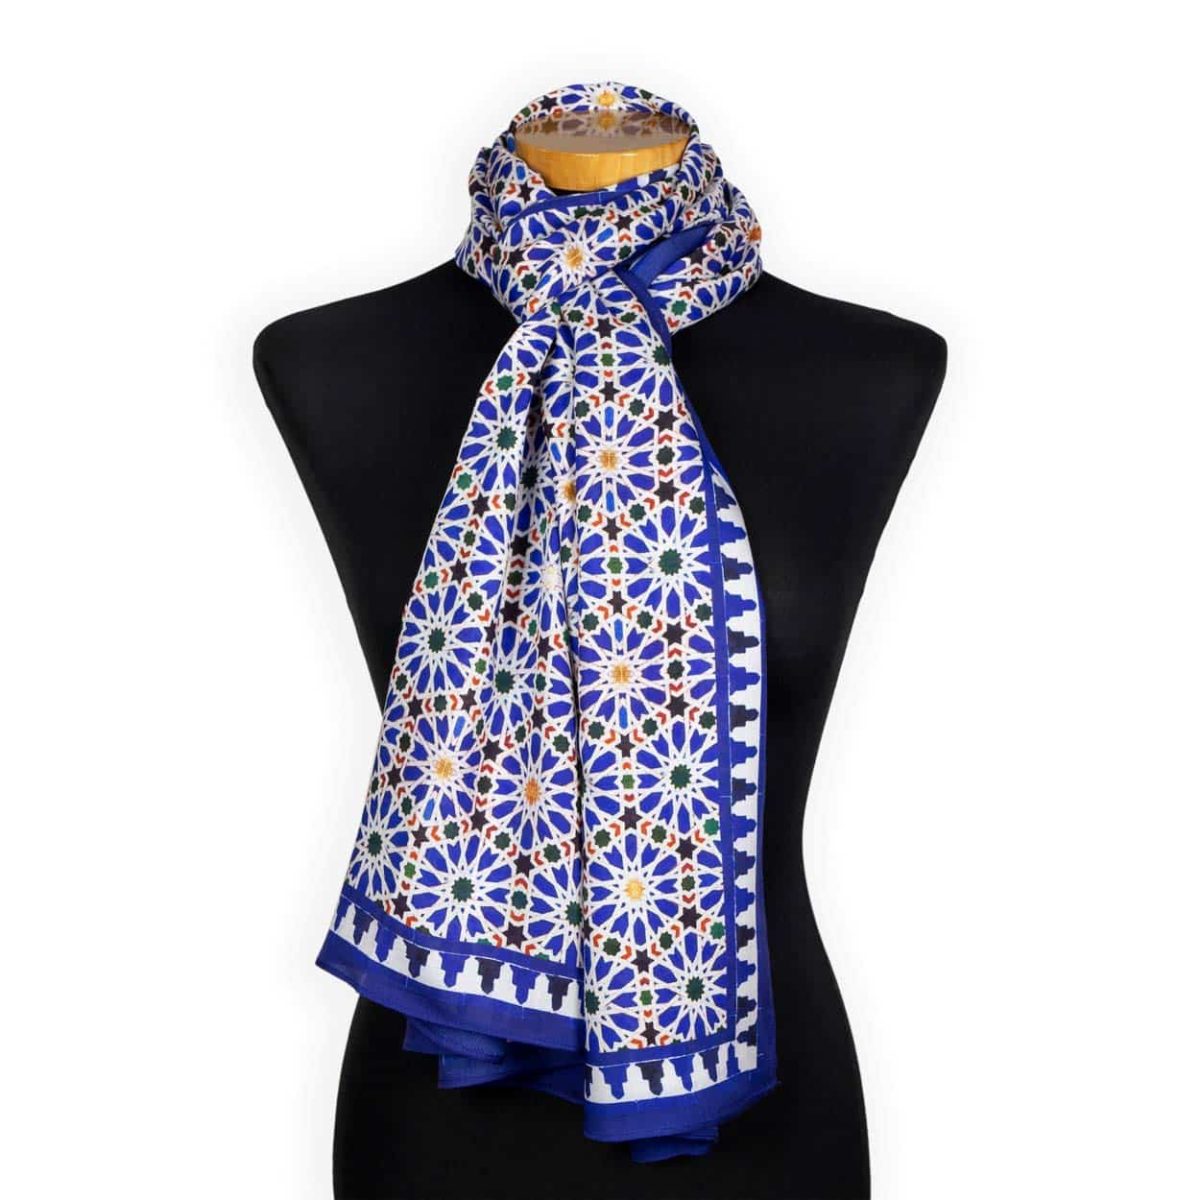 Pañuelo estampado azul para el cuello con mosaicos árabes de Sevilla